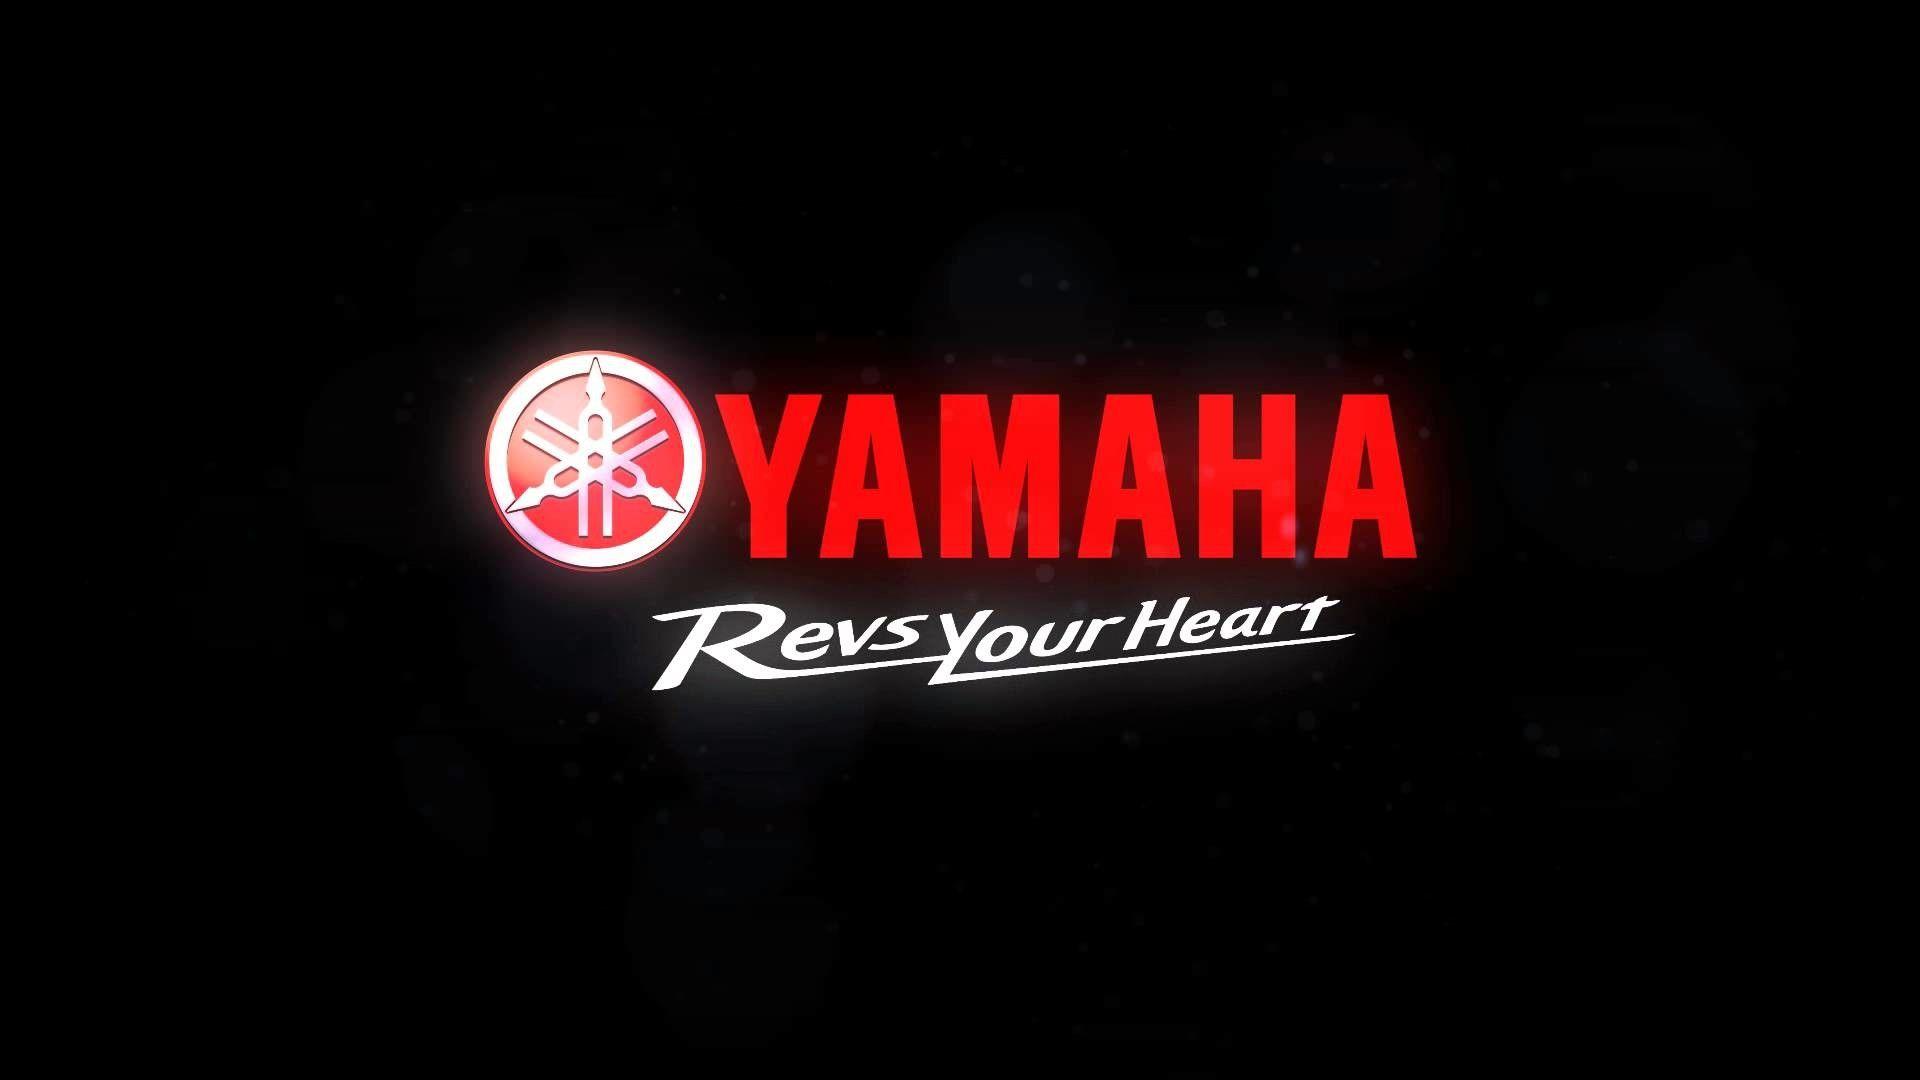 Yamaha Racing Logo Wallpaper Wallpaper Top High